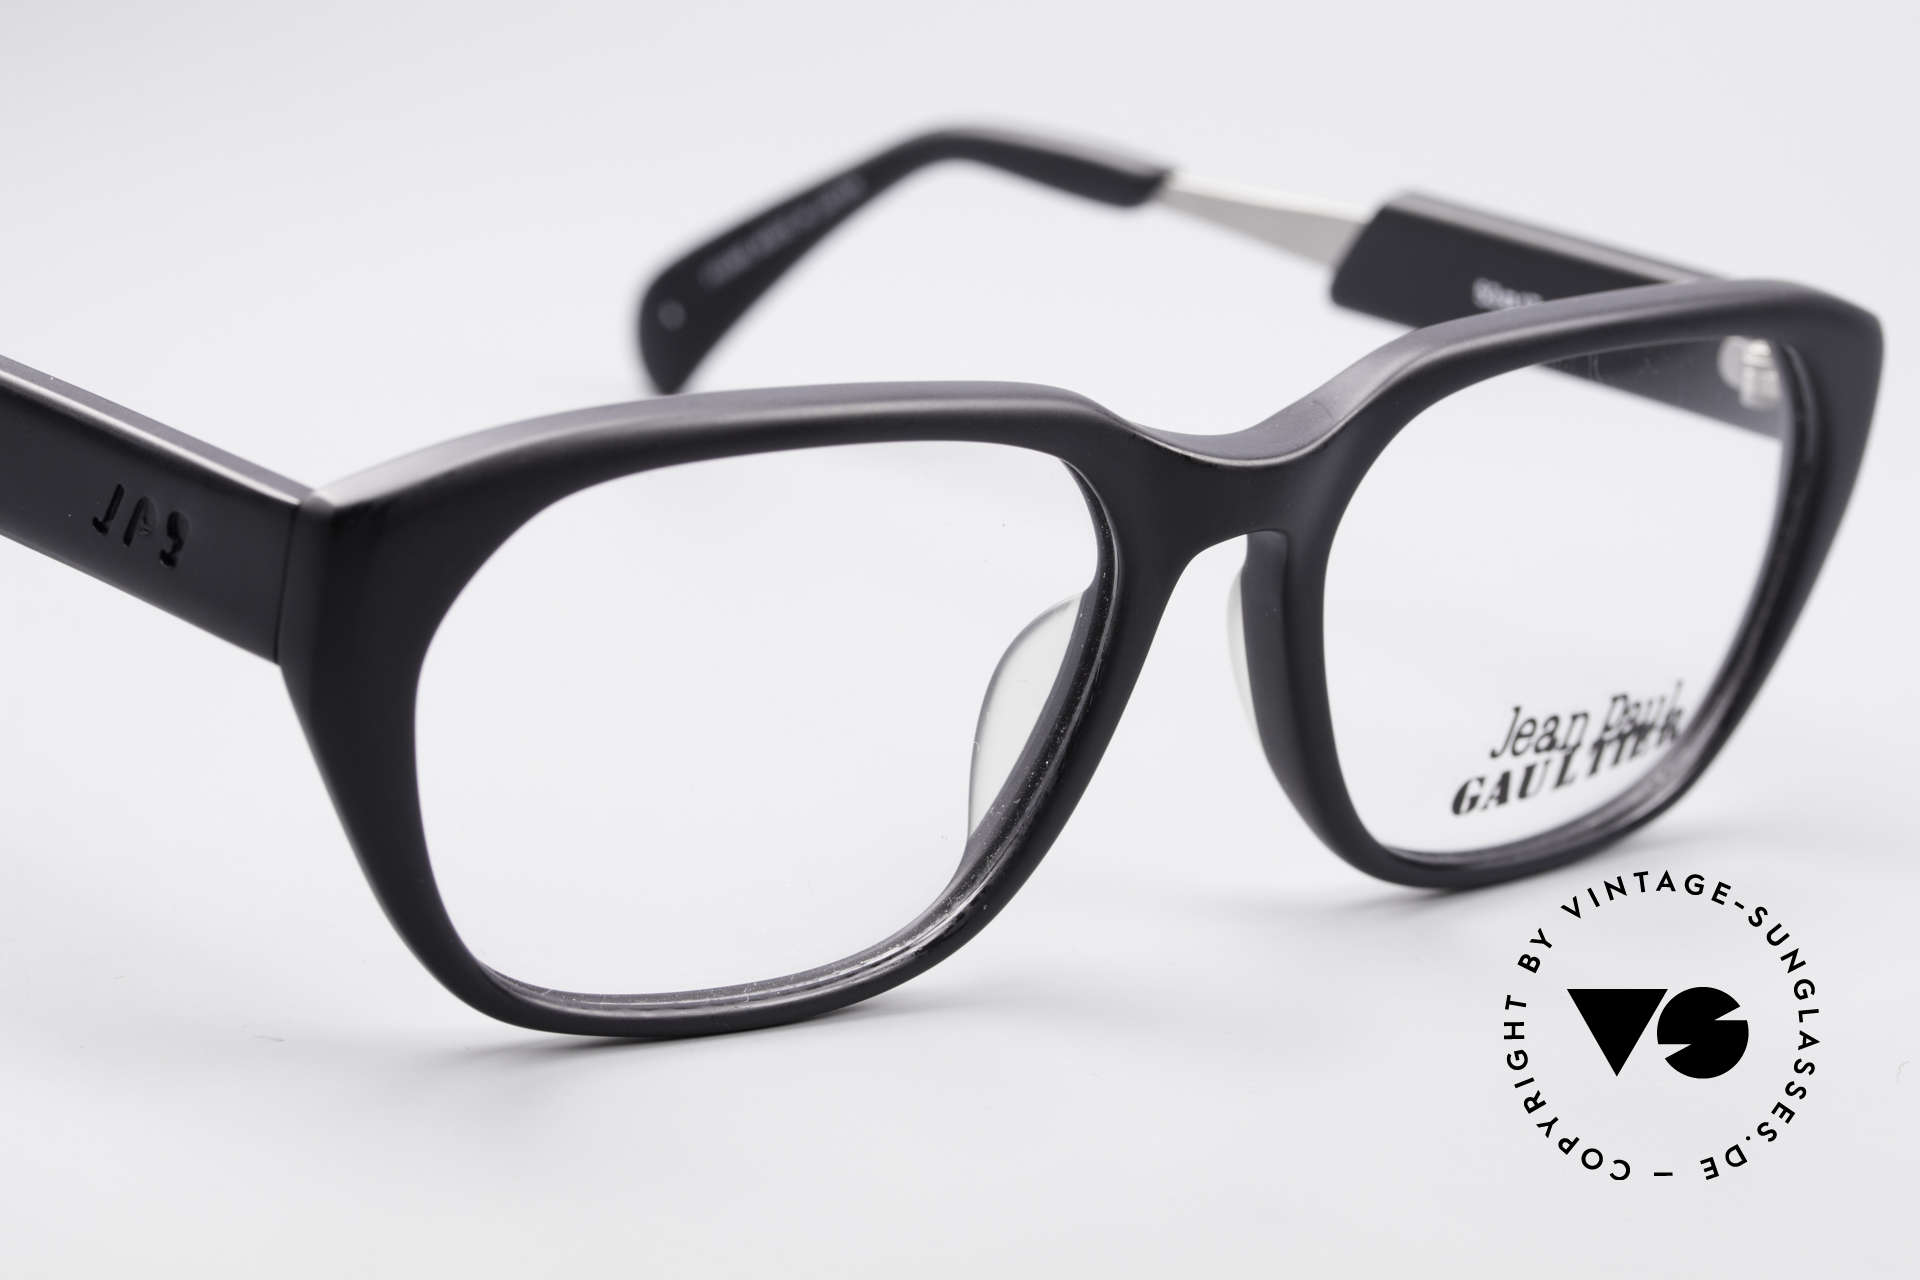 Jean Paul Gaultier 55-1071 Designer 90's Eyeglasses, NO RETRO specs, but a rare ORIGINAL from 1995/96, Made for Men and Women